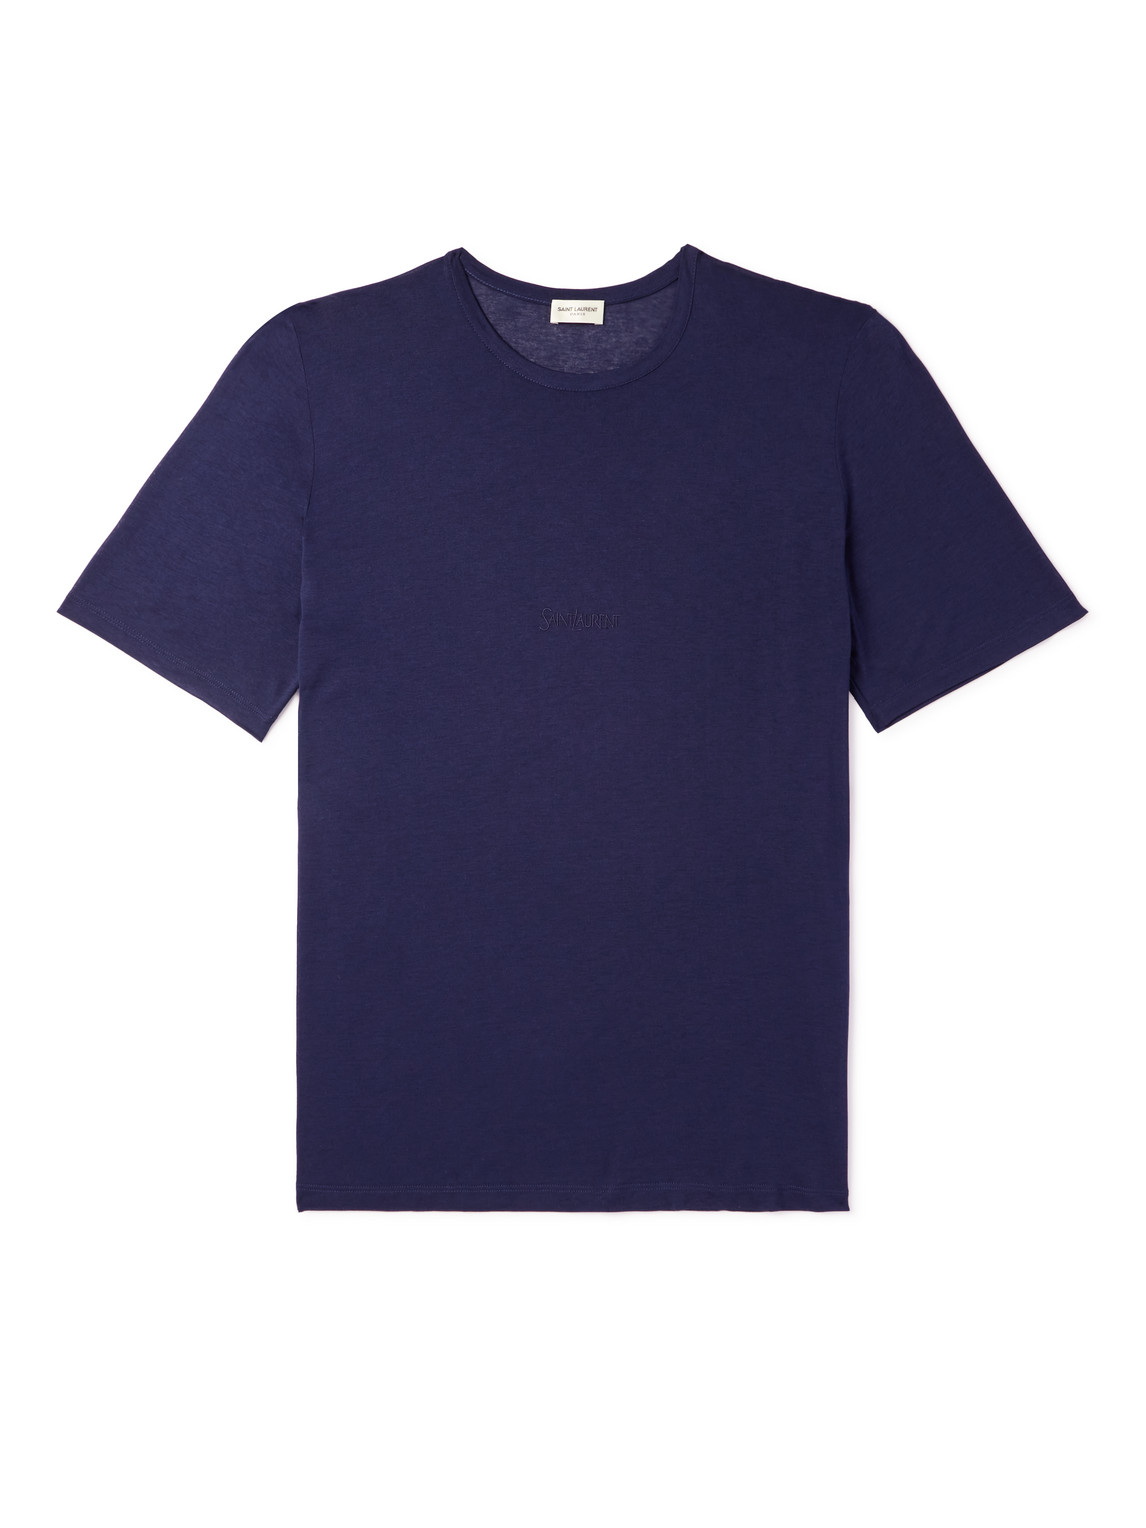 SAINT LAURENT - Logo-Embroidered Jersey T-Shirt - Men - Blue - L von SAINT LAURENT